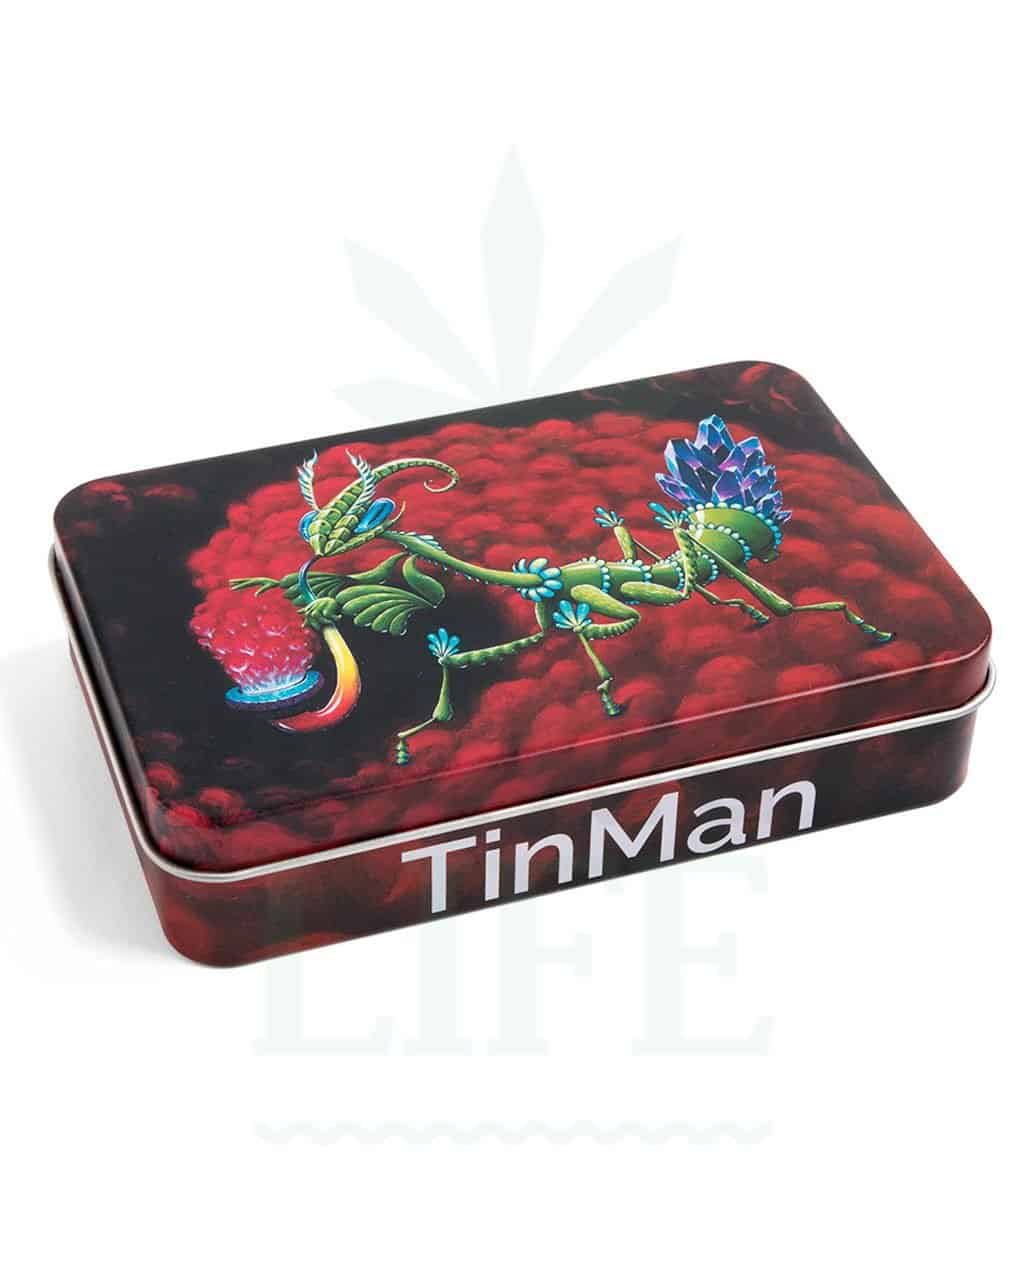 Säilytys TinMan TinCase Alubox 13cm x 8,5cm